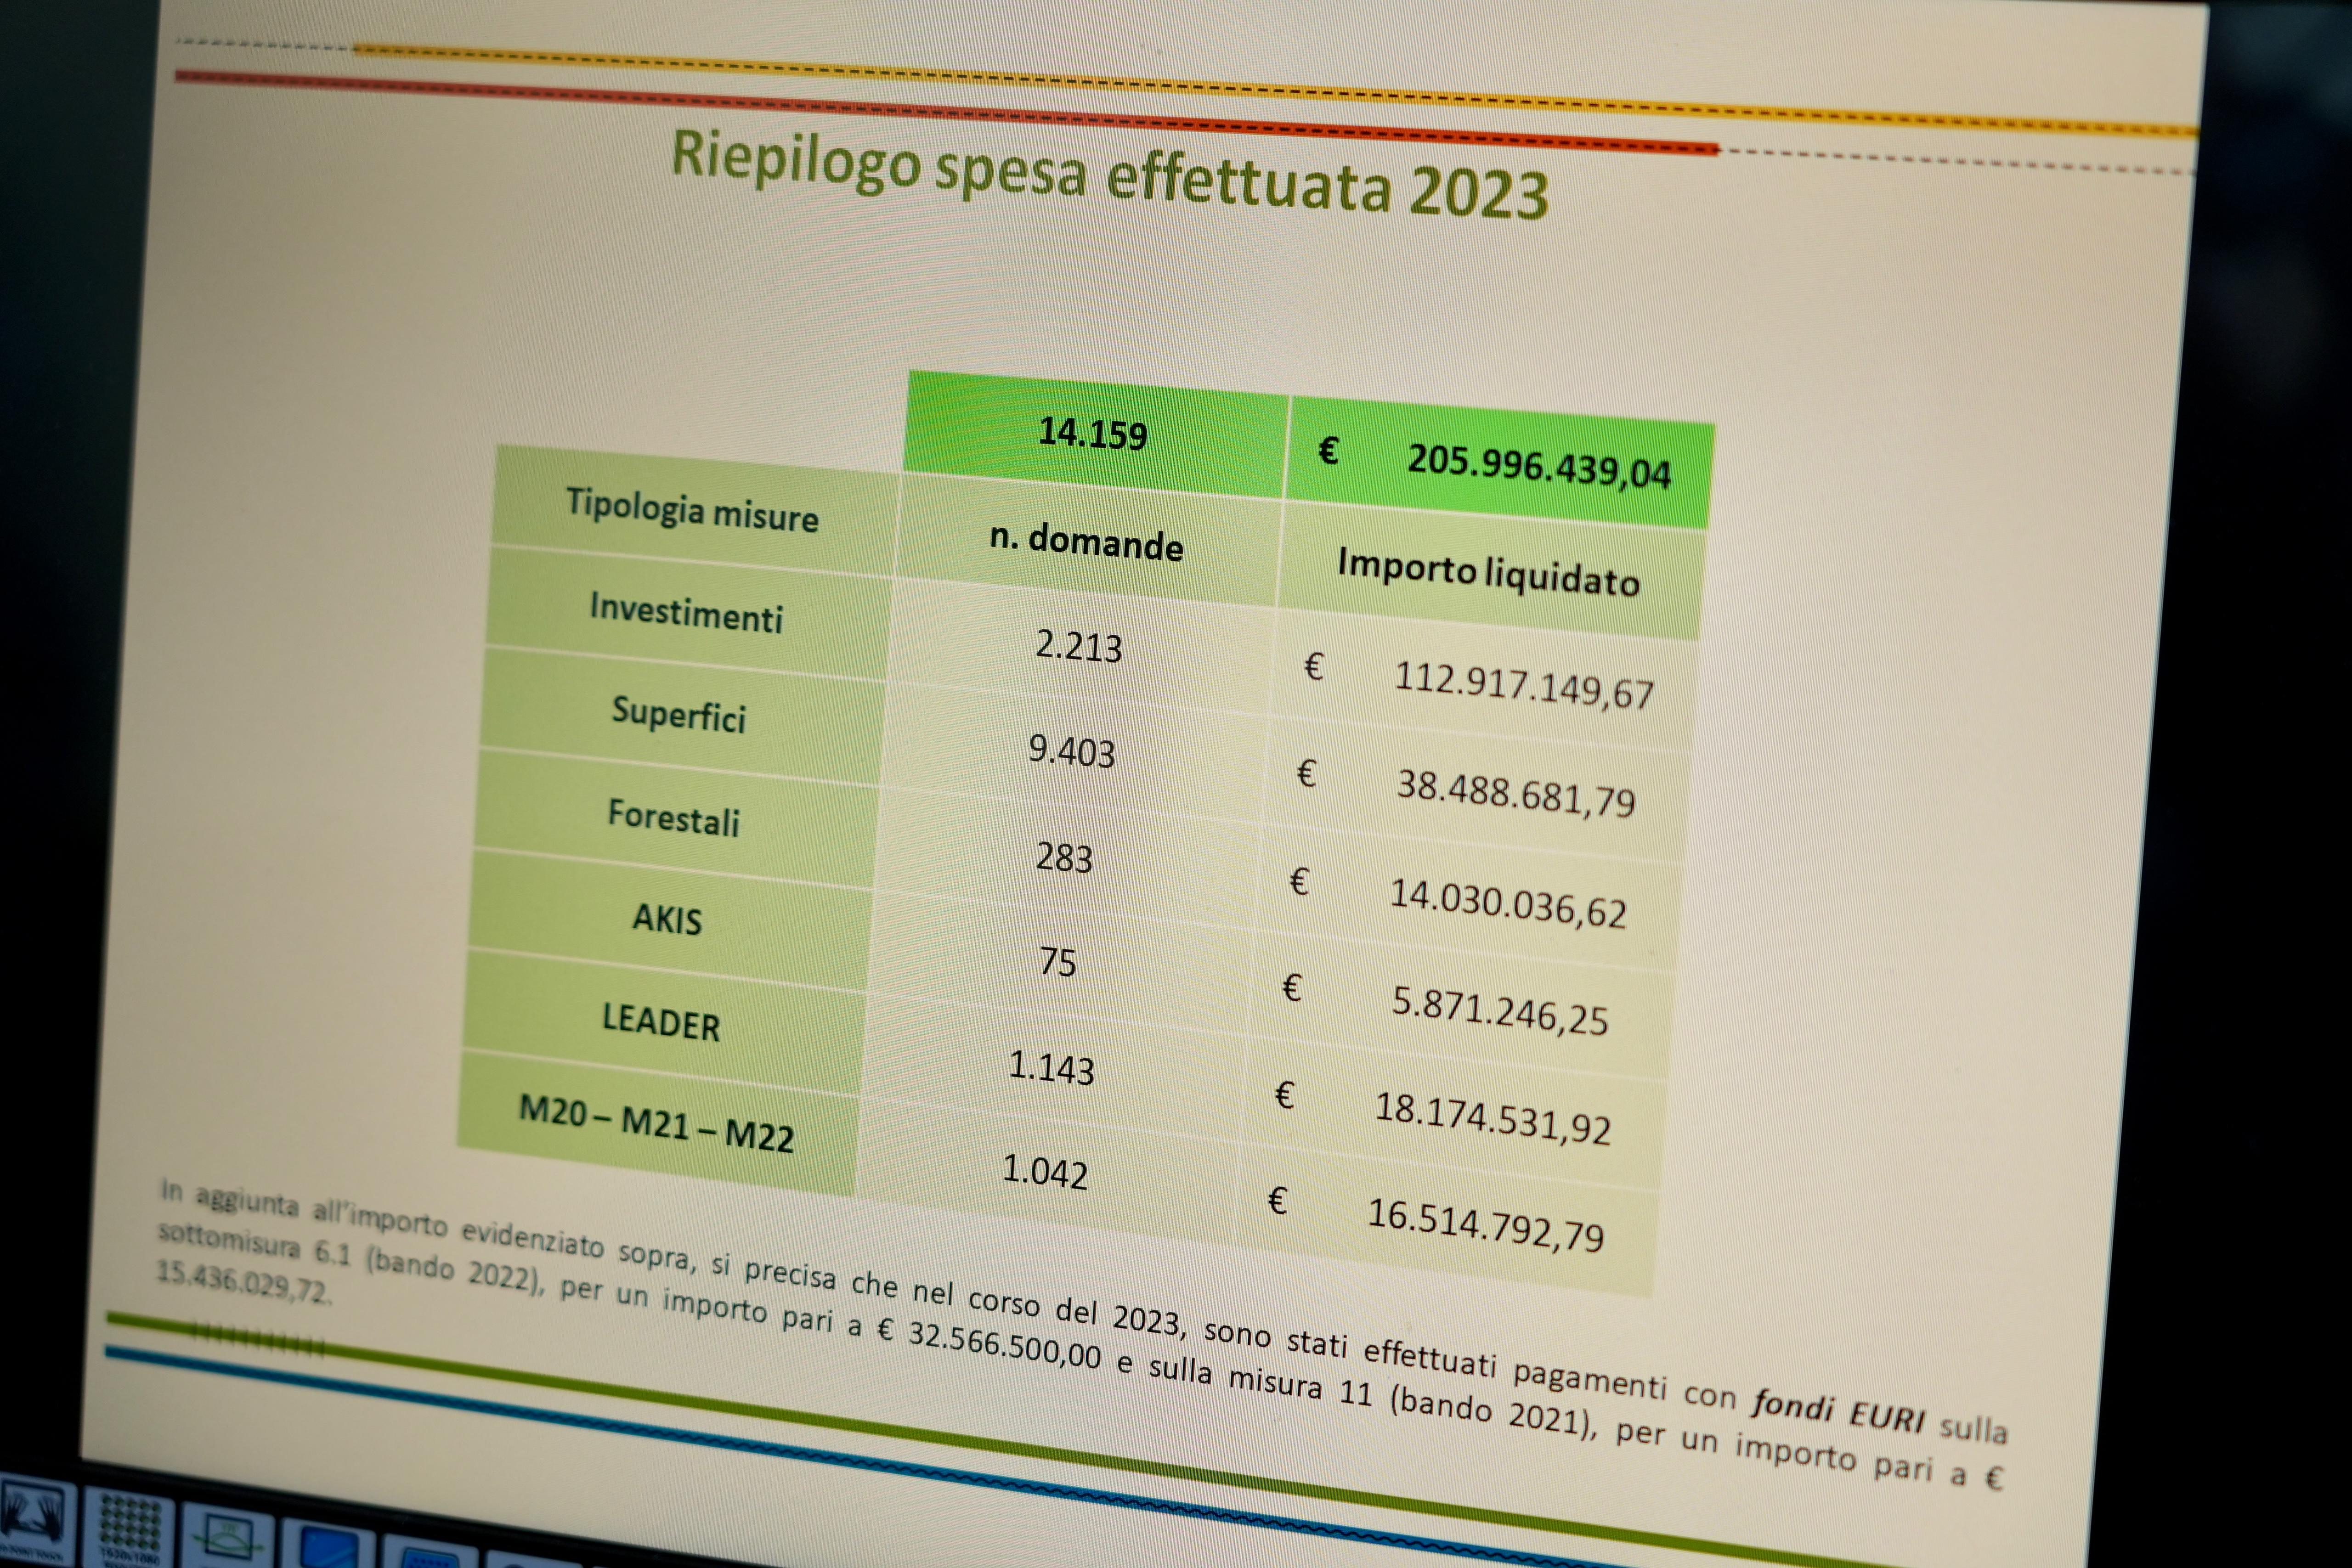 Galleria PSR 2014-2022, Emiliano e Pentassuglia: “La Puglia per il 2023 supera l’obiettivo di spesa dei fondi europei per lo sviluppo rurale. Per il secondo anno raggiunto il target previsto” - Diapositiva 8 di 10